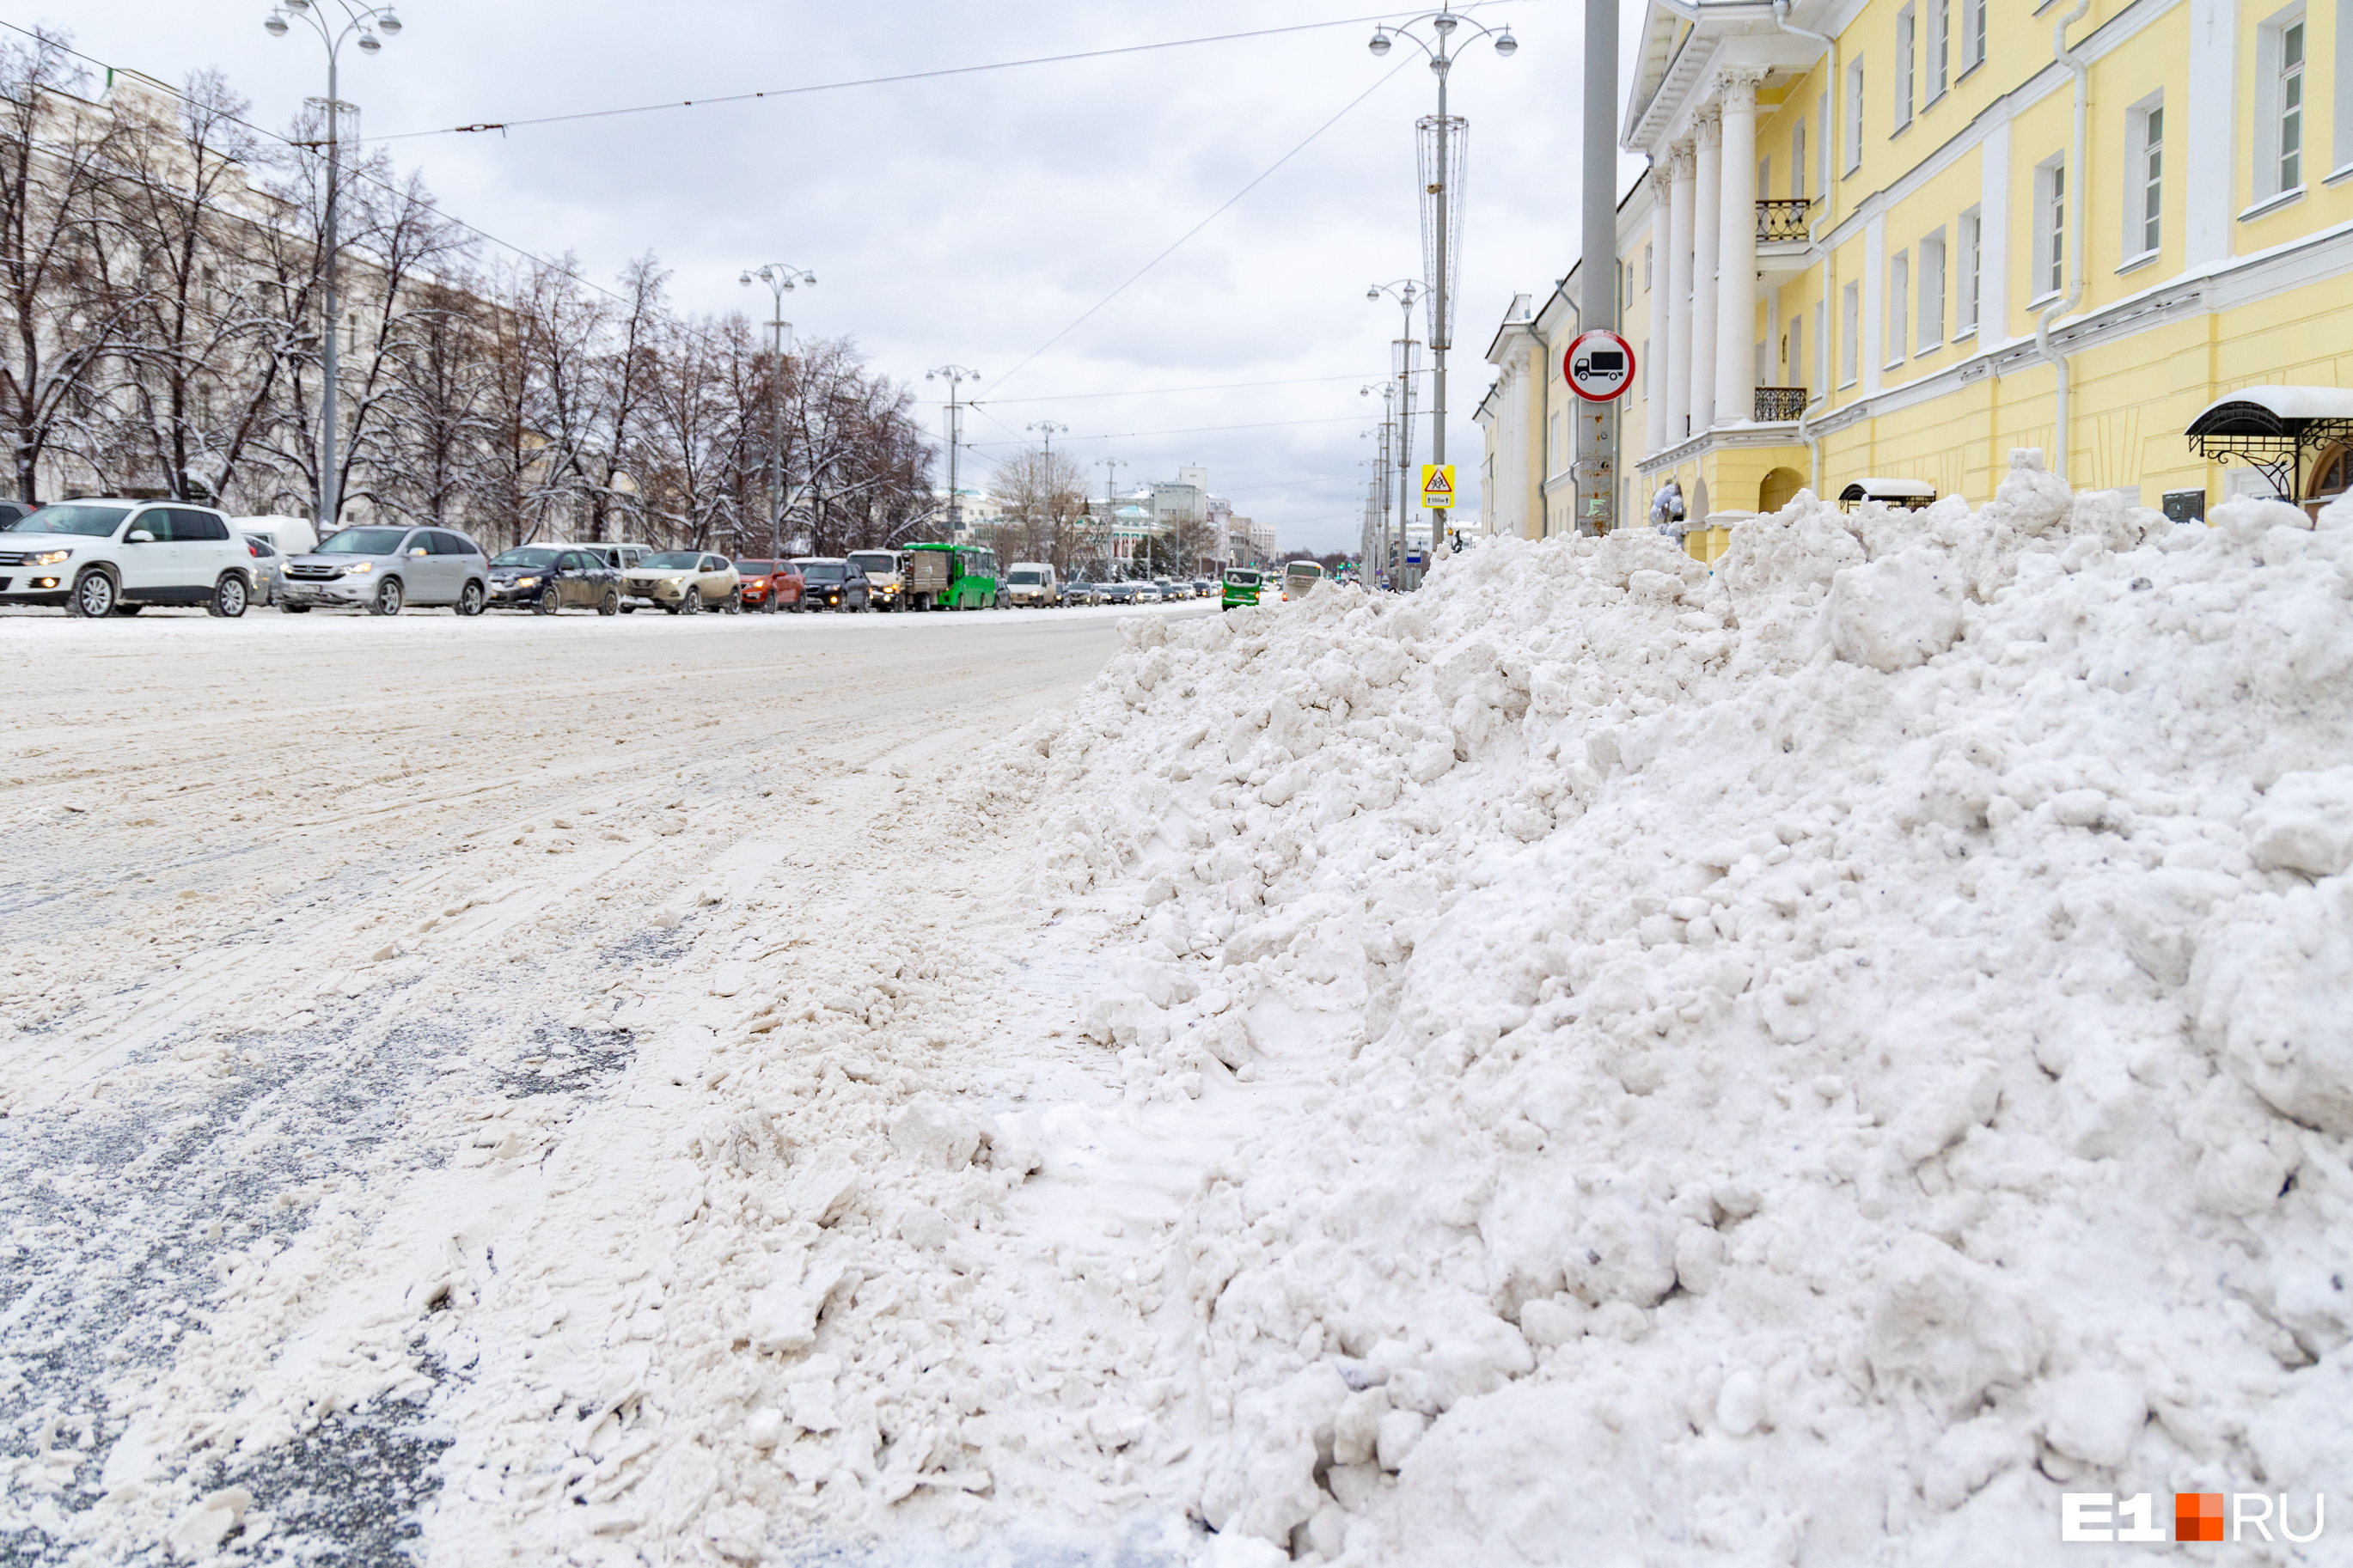 Сугробы размером с человека! Фоторепортаж с заваленных снегом улиц Екатеринбурга